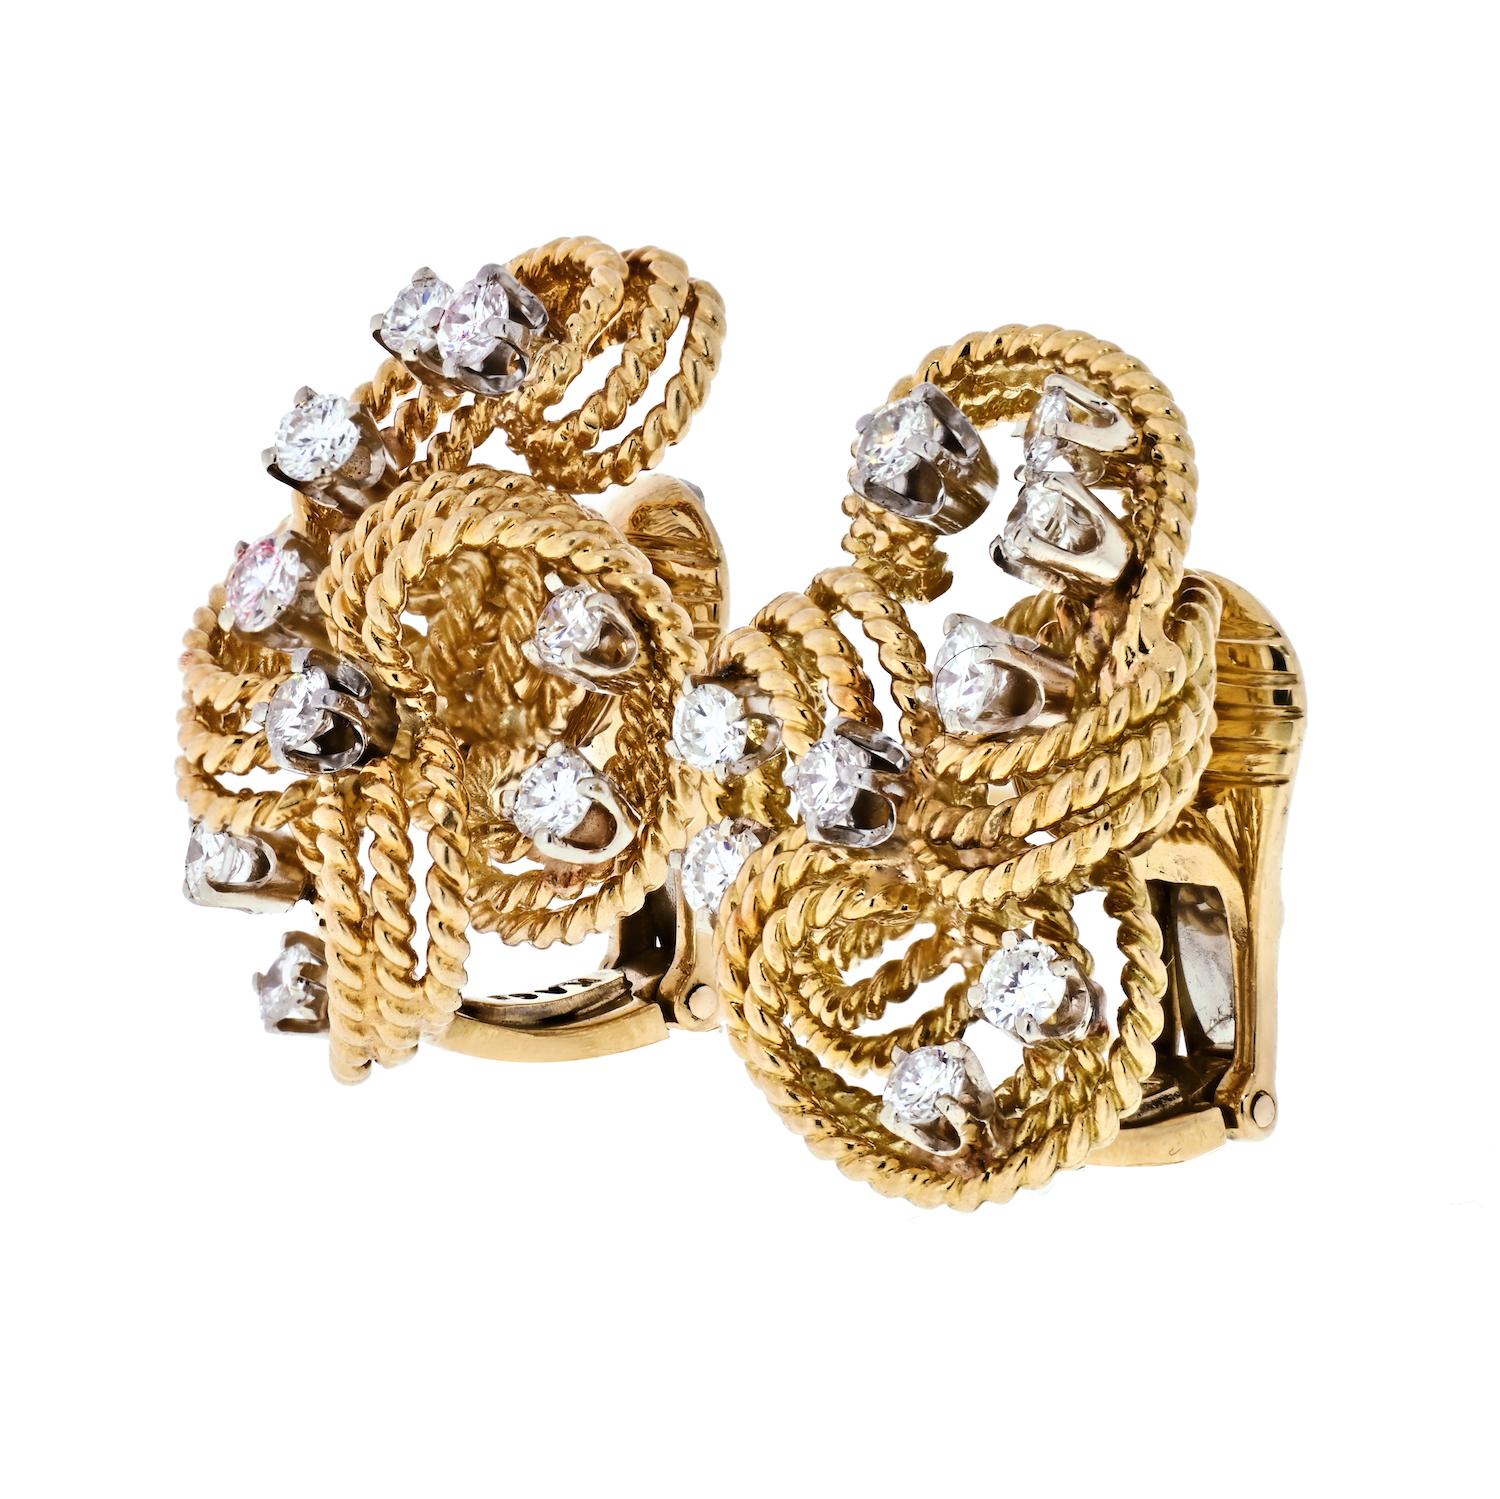 Élégants clips d'oreilles en or et diamants de David Webb. Chaque boucle d'oreille comporte 18 diamants pour un poids total d'environ 2,00 carats. Ils sont entourés de rangées d'or torsadé dans un design gracieux et ascendant.
Les clips peuvent être